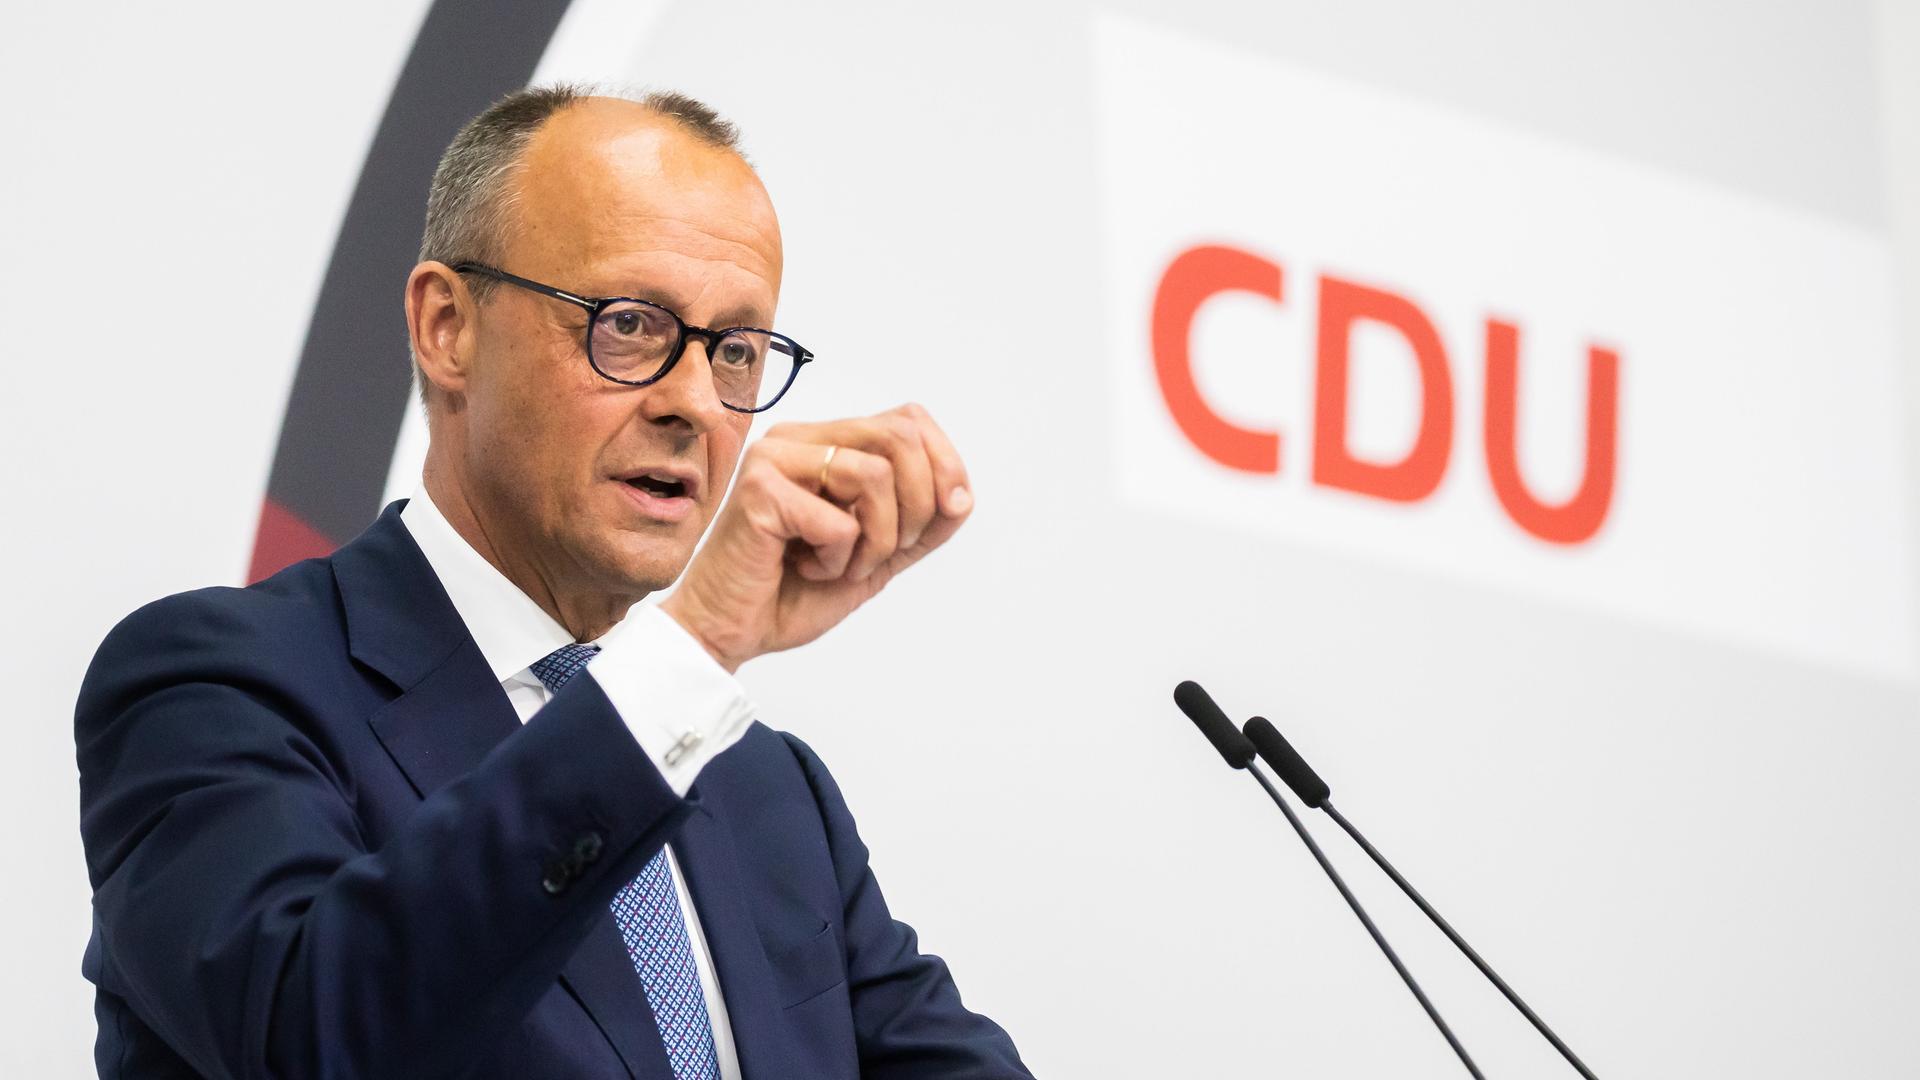 Kontroverse um AfD – SPD kritisiert Äußerungen von CDU-Chef Merz